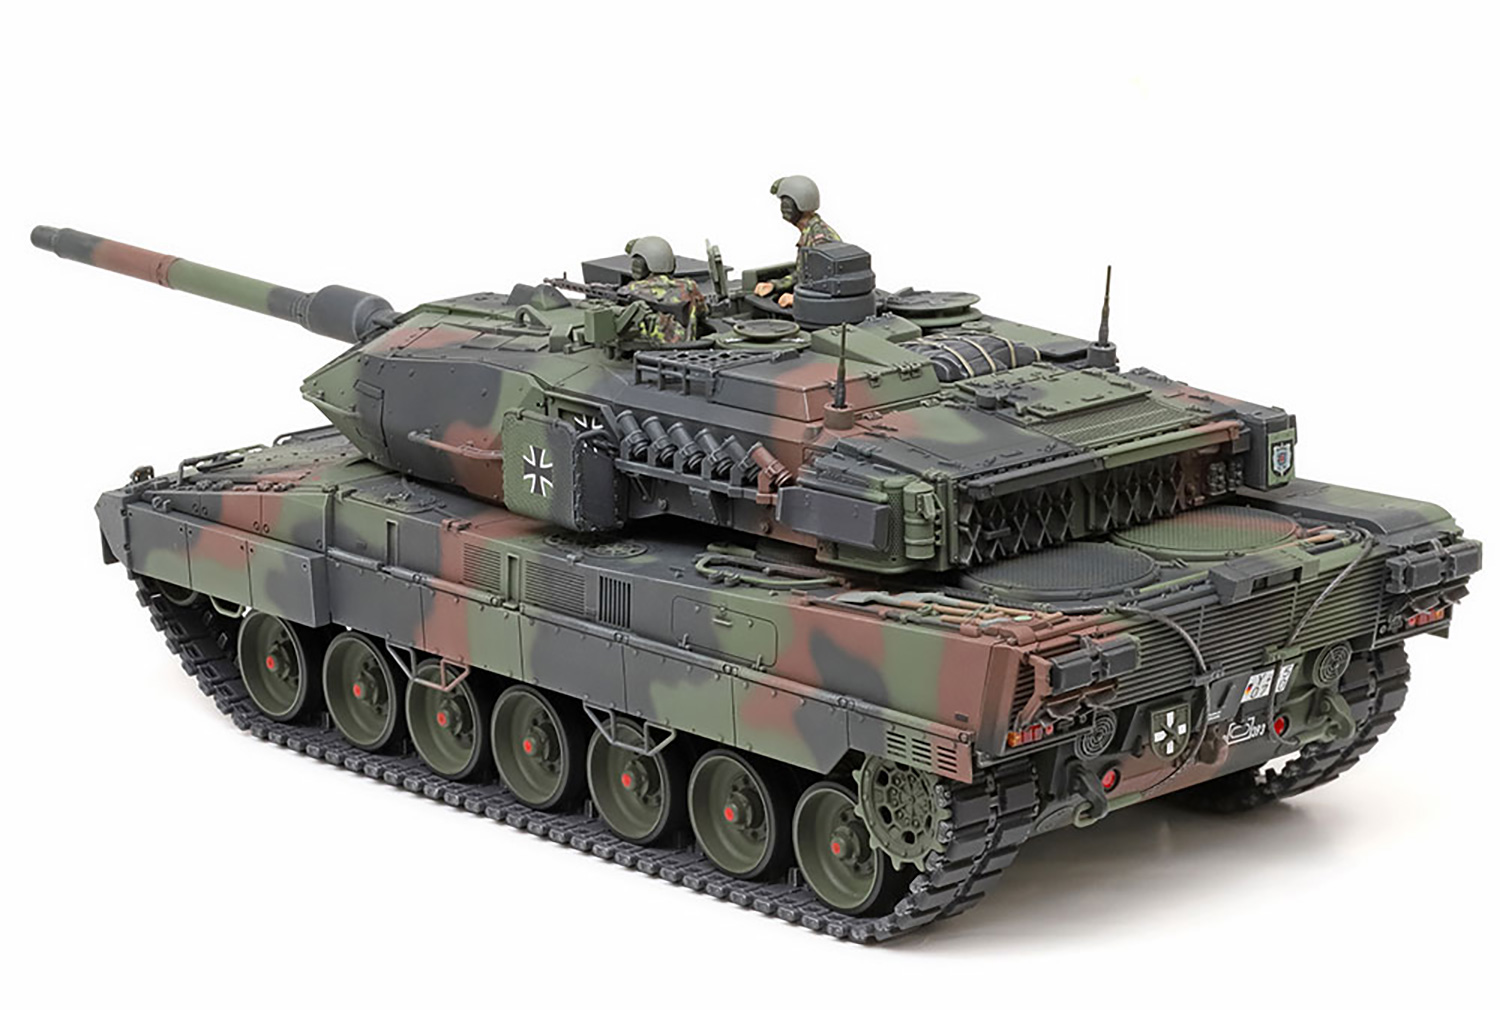 ドイツ連邦軍主力戦車 レオパルト 2 A7V プラモデル (タミヤ 1/35 ミリタリーミニチュアシリーズ No.35387) 商品画像_4